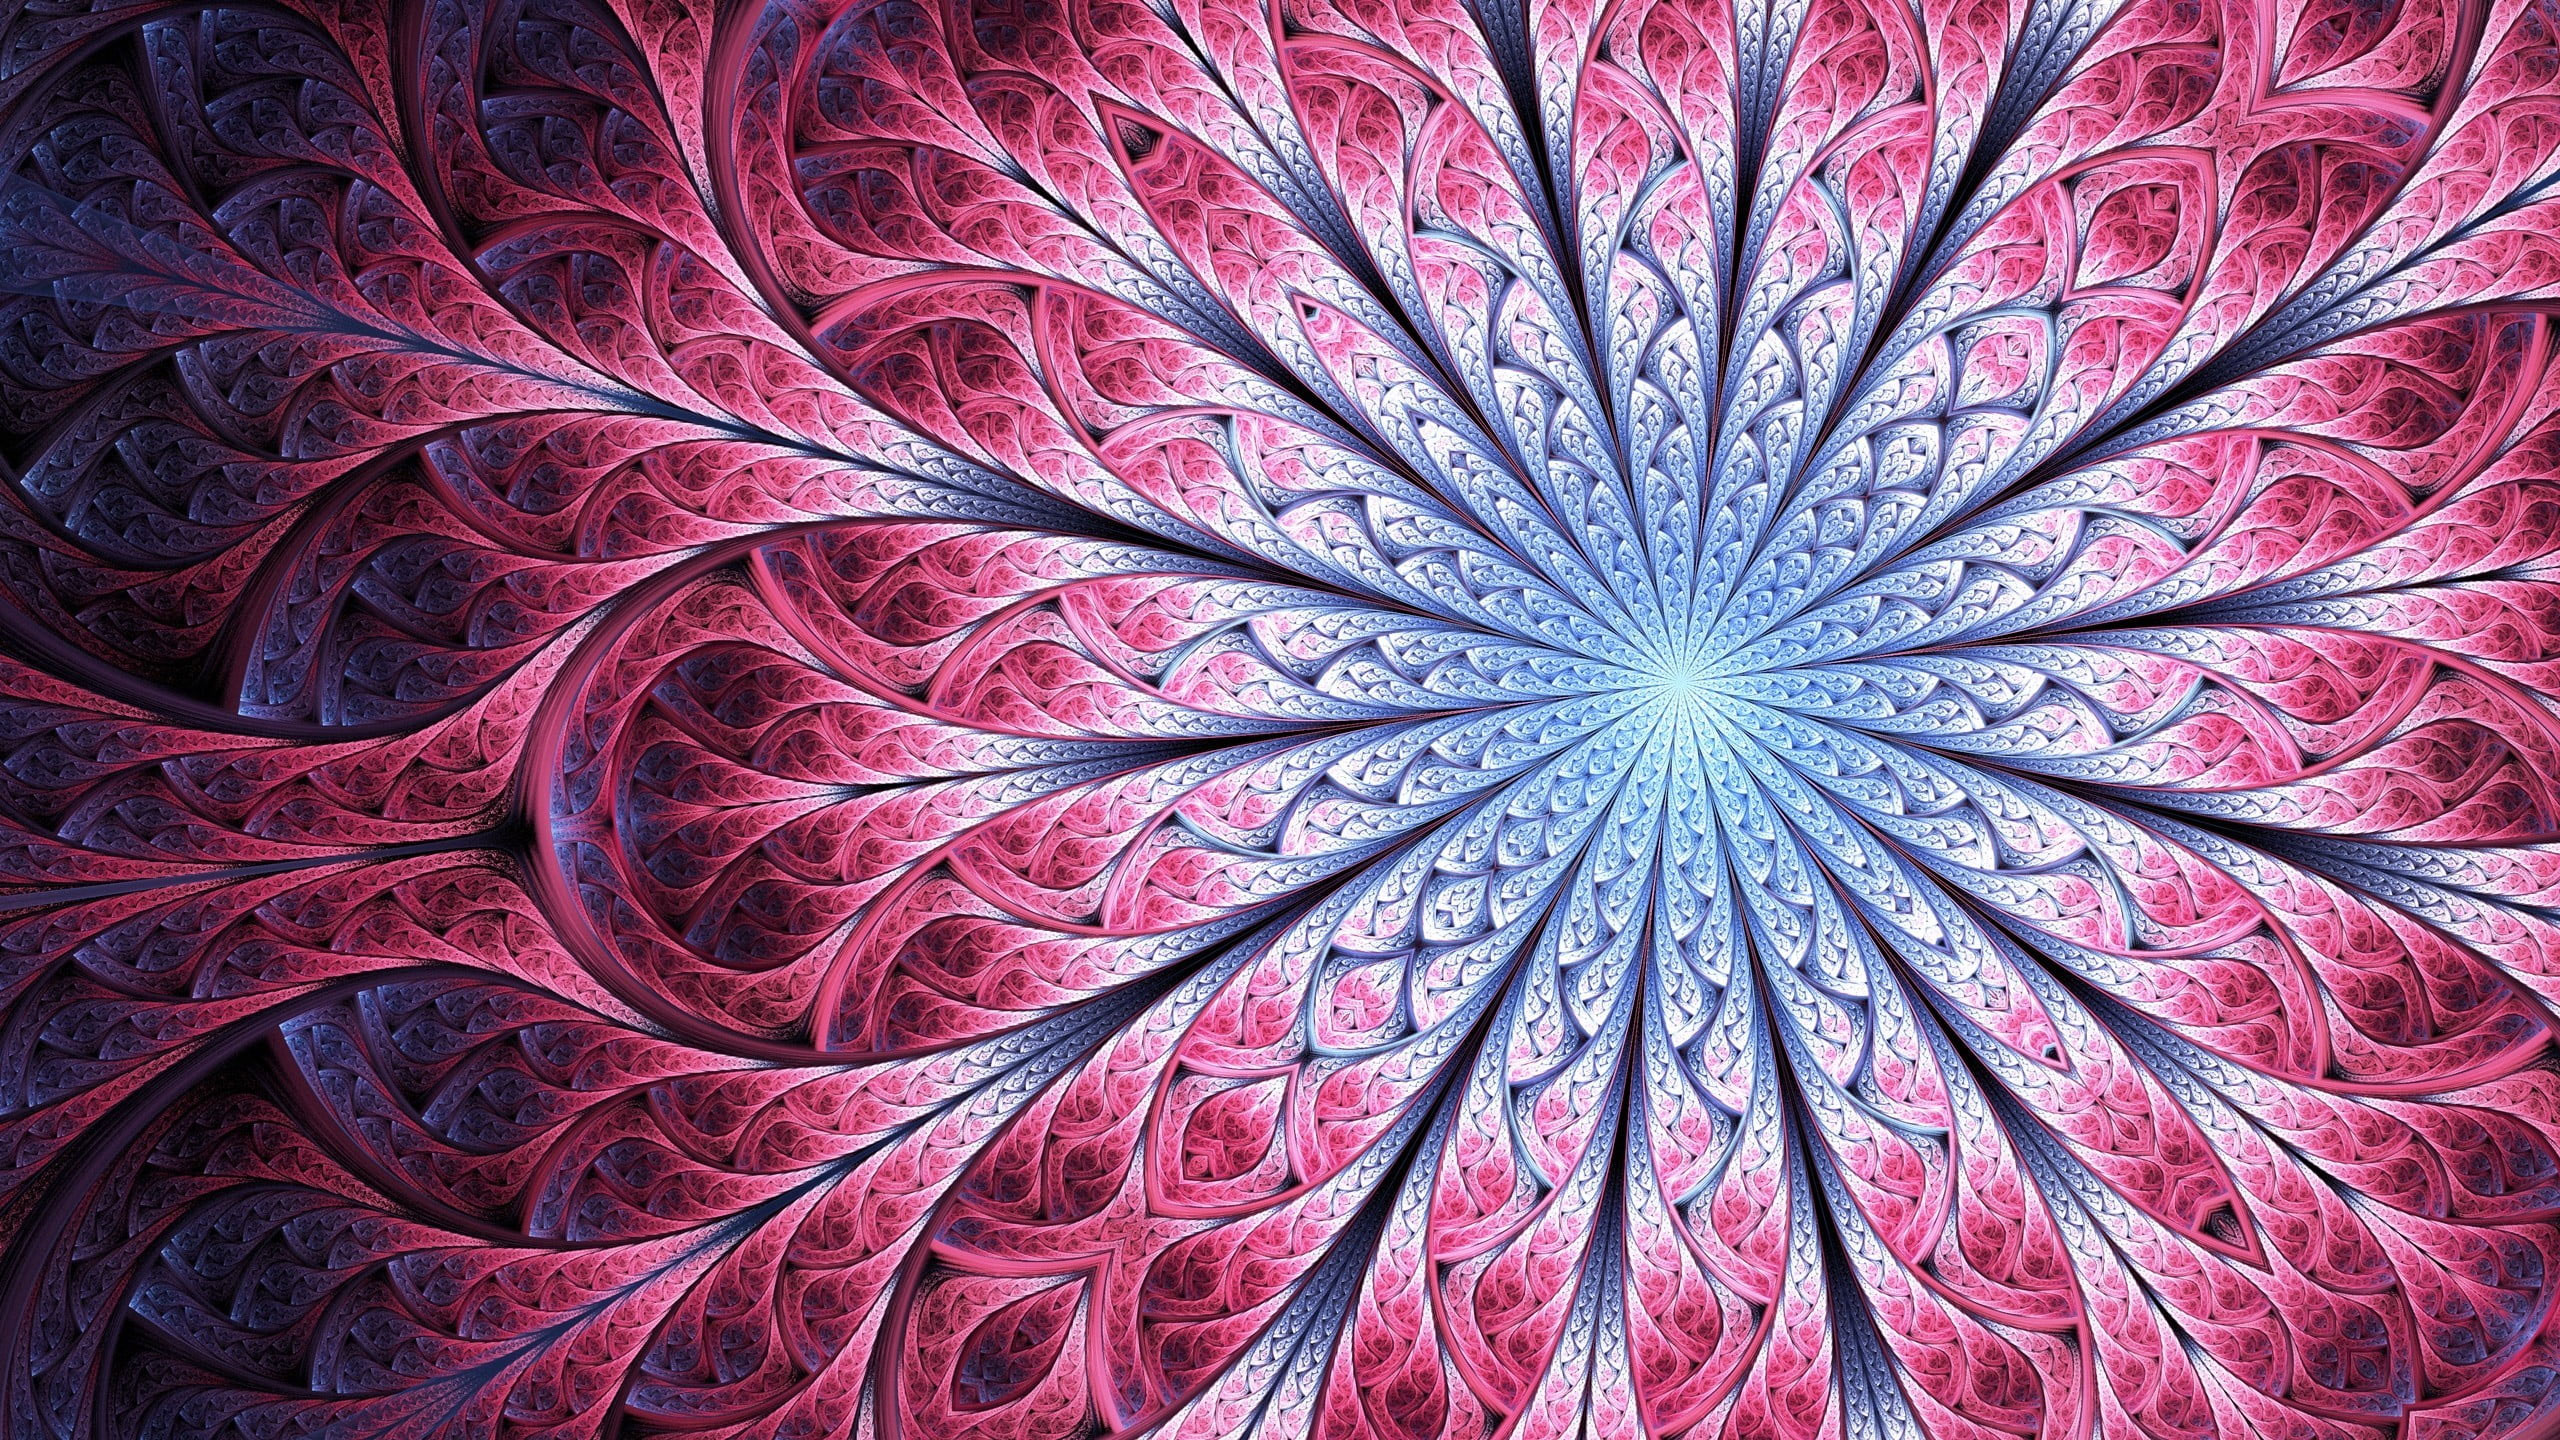 Mandala wallpaper illustration, fractal, digital art, full frame, backgrounds